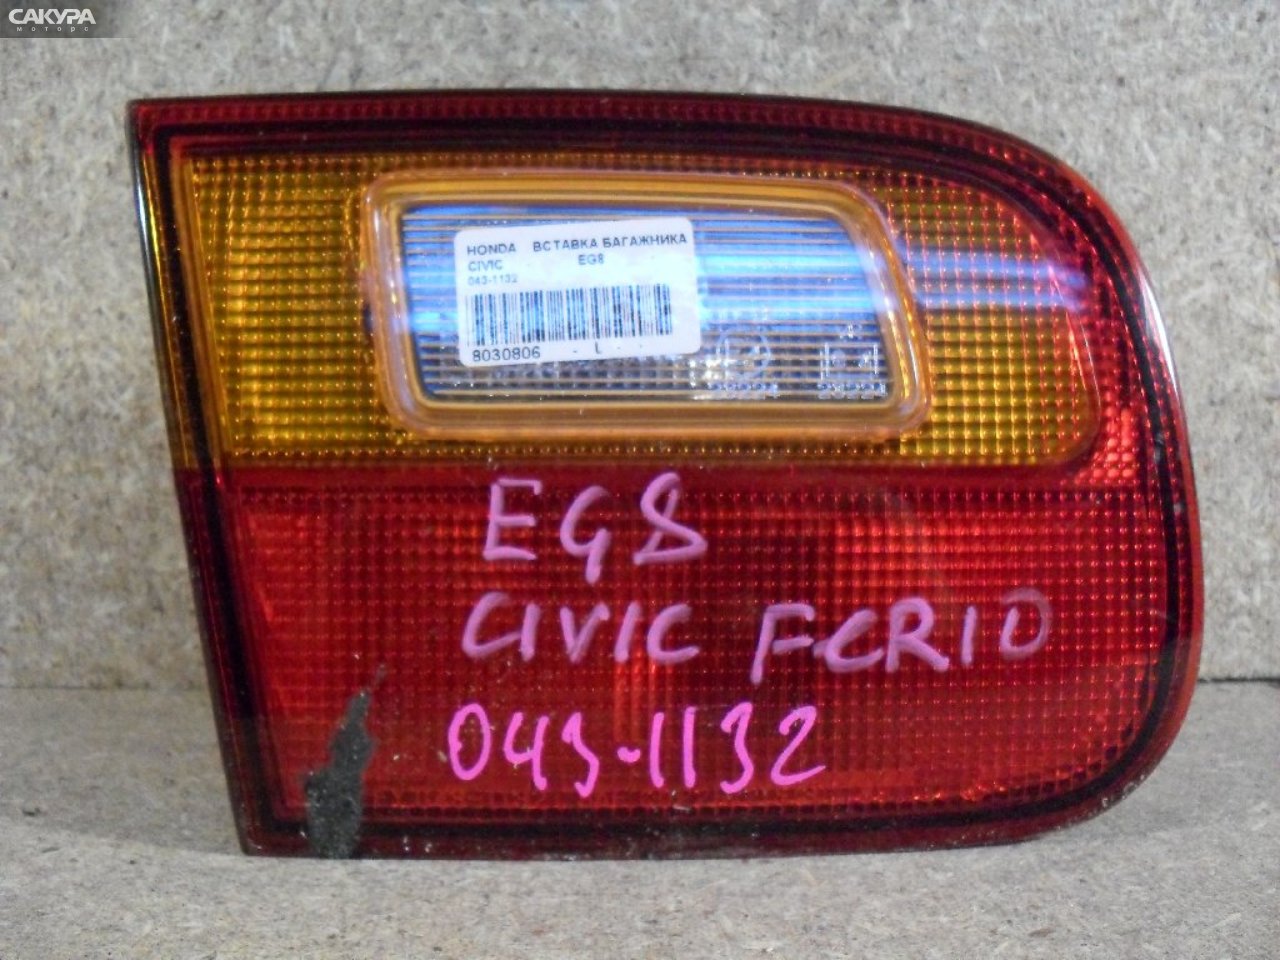 Фонарь вставка багажника левый Honda Civic Ferio EG8 043-1132: купить в Сакура Абакан.